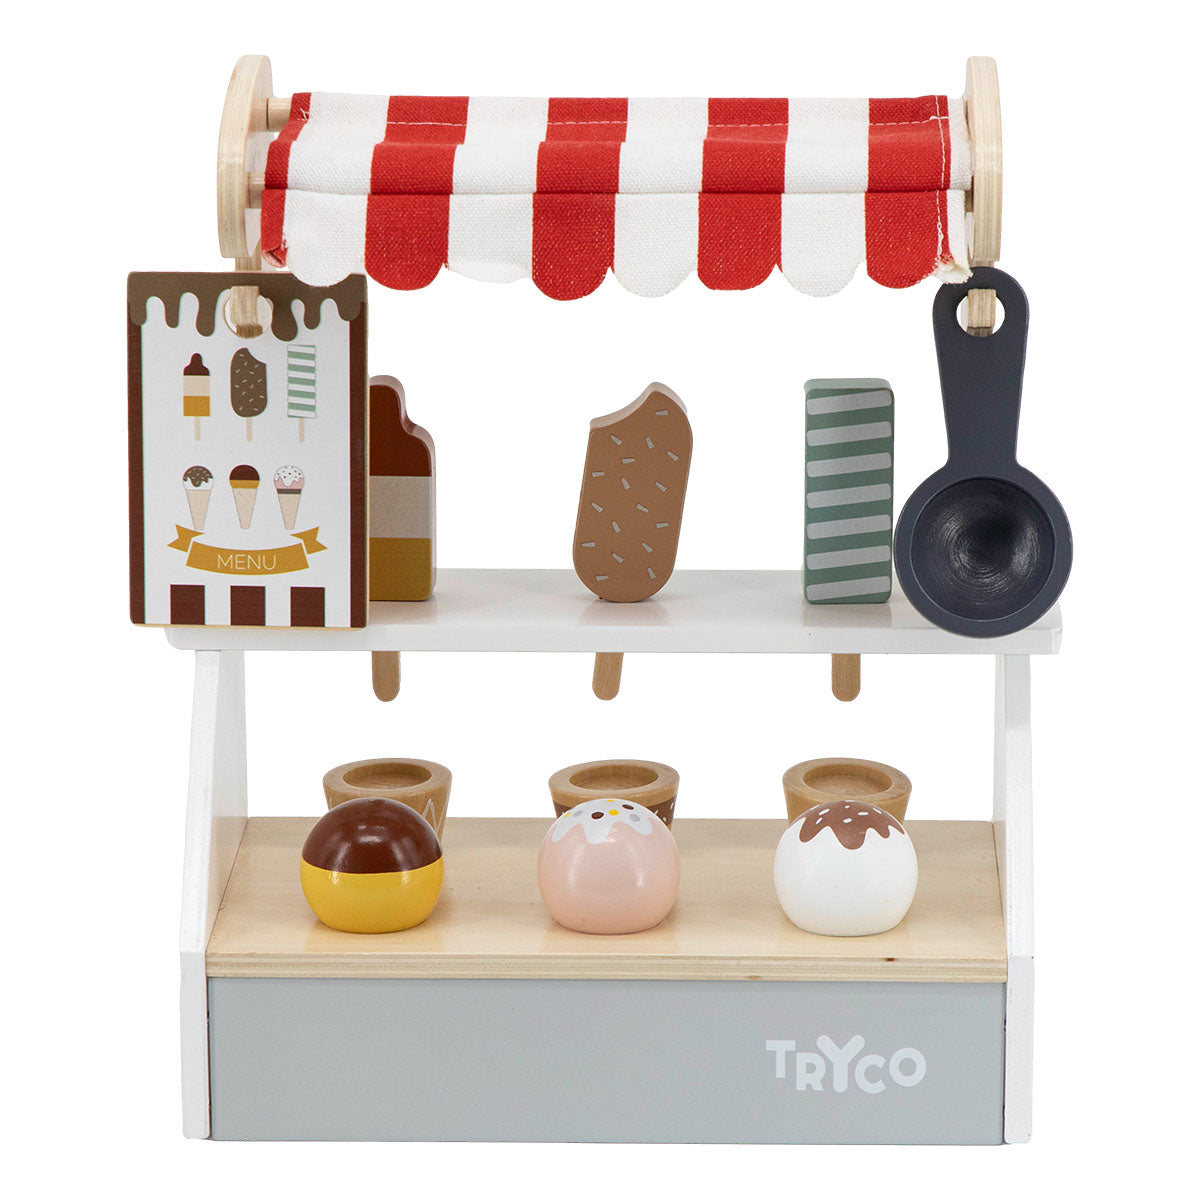 De Tryco ijskraam is het perfecte speelgoed voor een rollenspel van jouw kindje! Een raketje of toch liever schepijs? Bij deze leuke ijskraam is van alles te krijgen. VanZus.